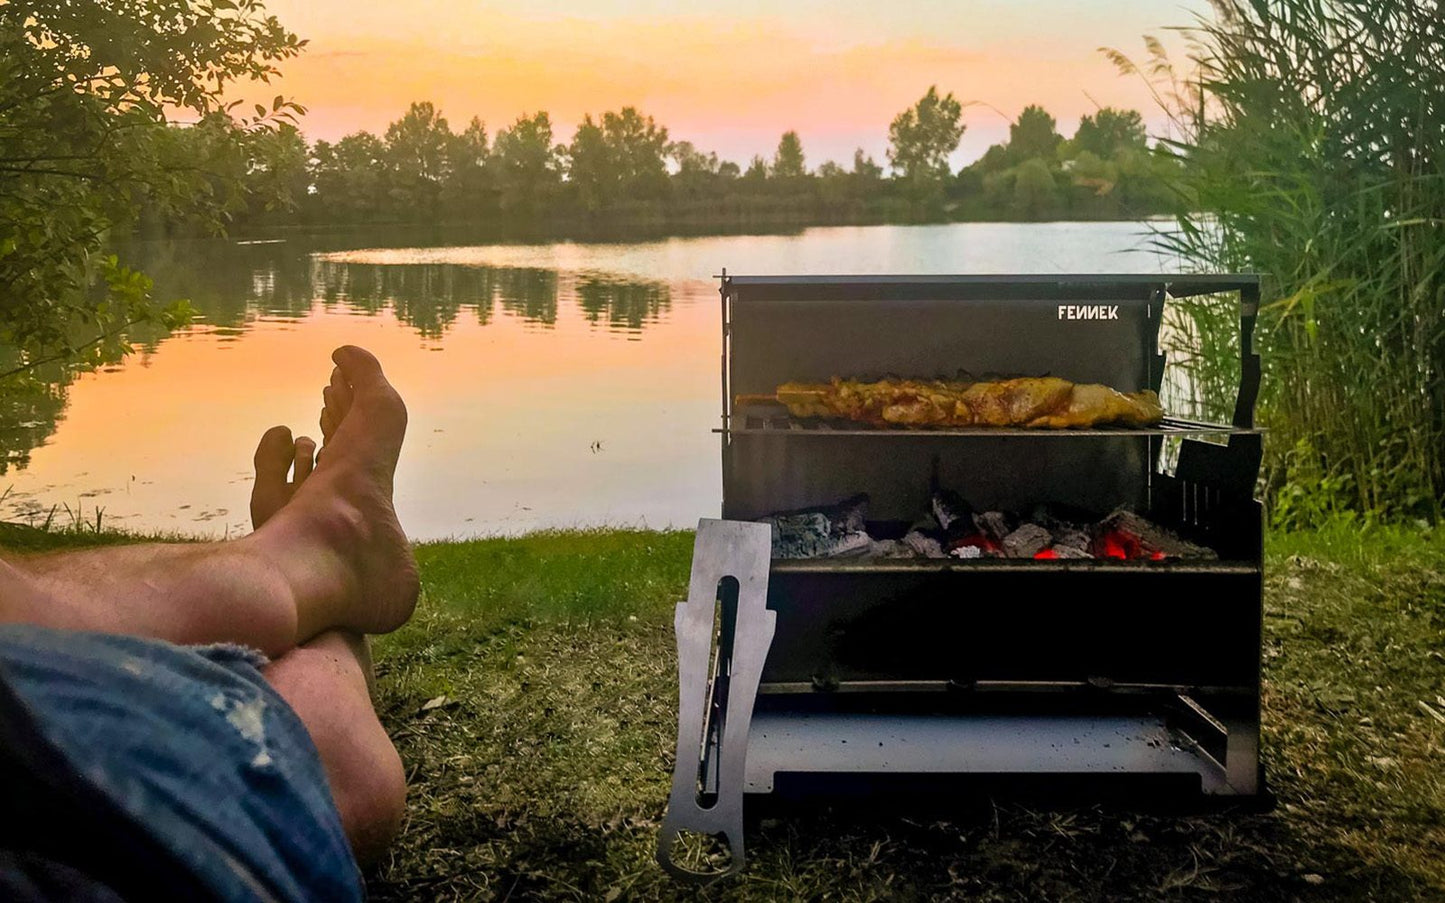 Fennek Grill mit glühender Kohle und Grillfleisch auf dem Rost bei Sonnenuntergang am See.